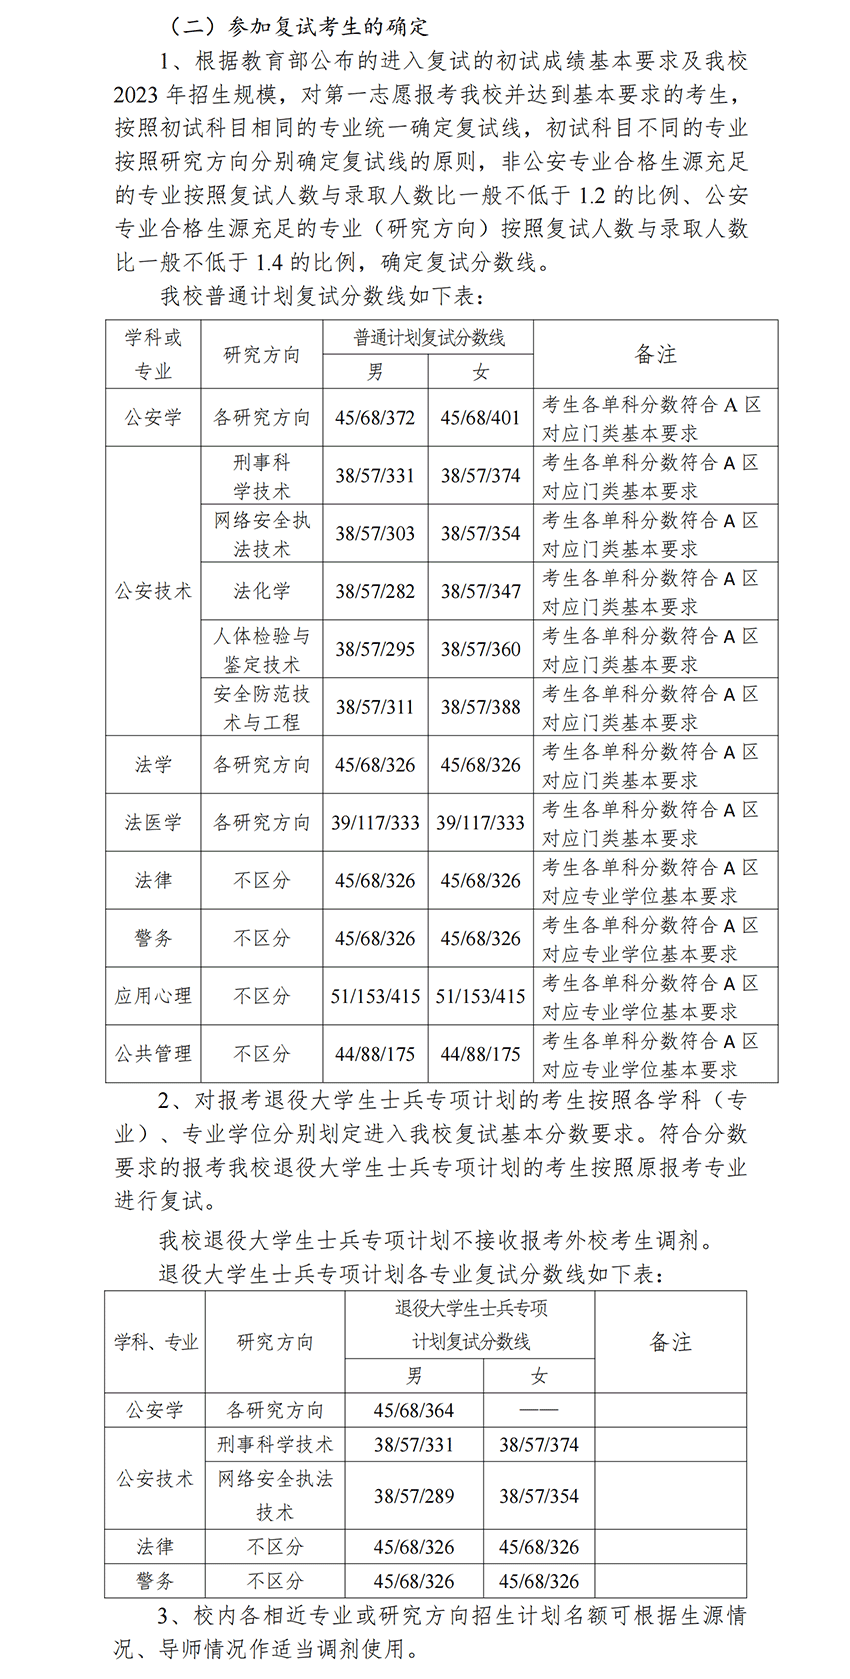 2023中国刑事警察学院考研分数线